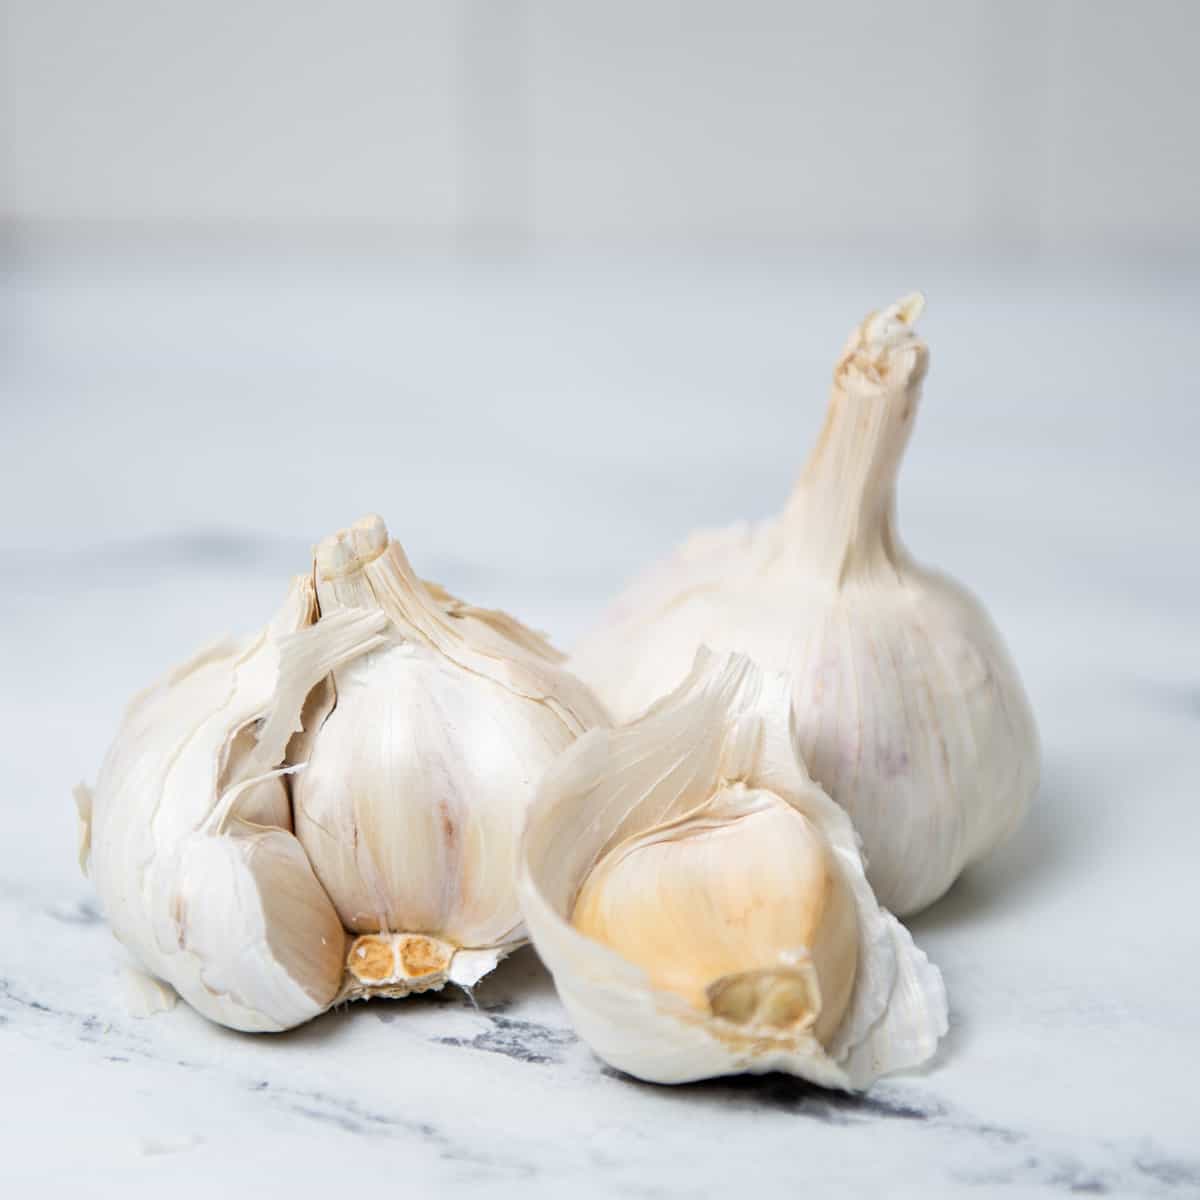 Garlic bulbs on a countertop.